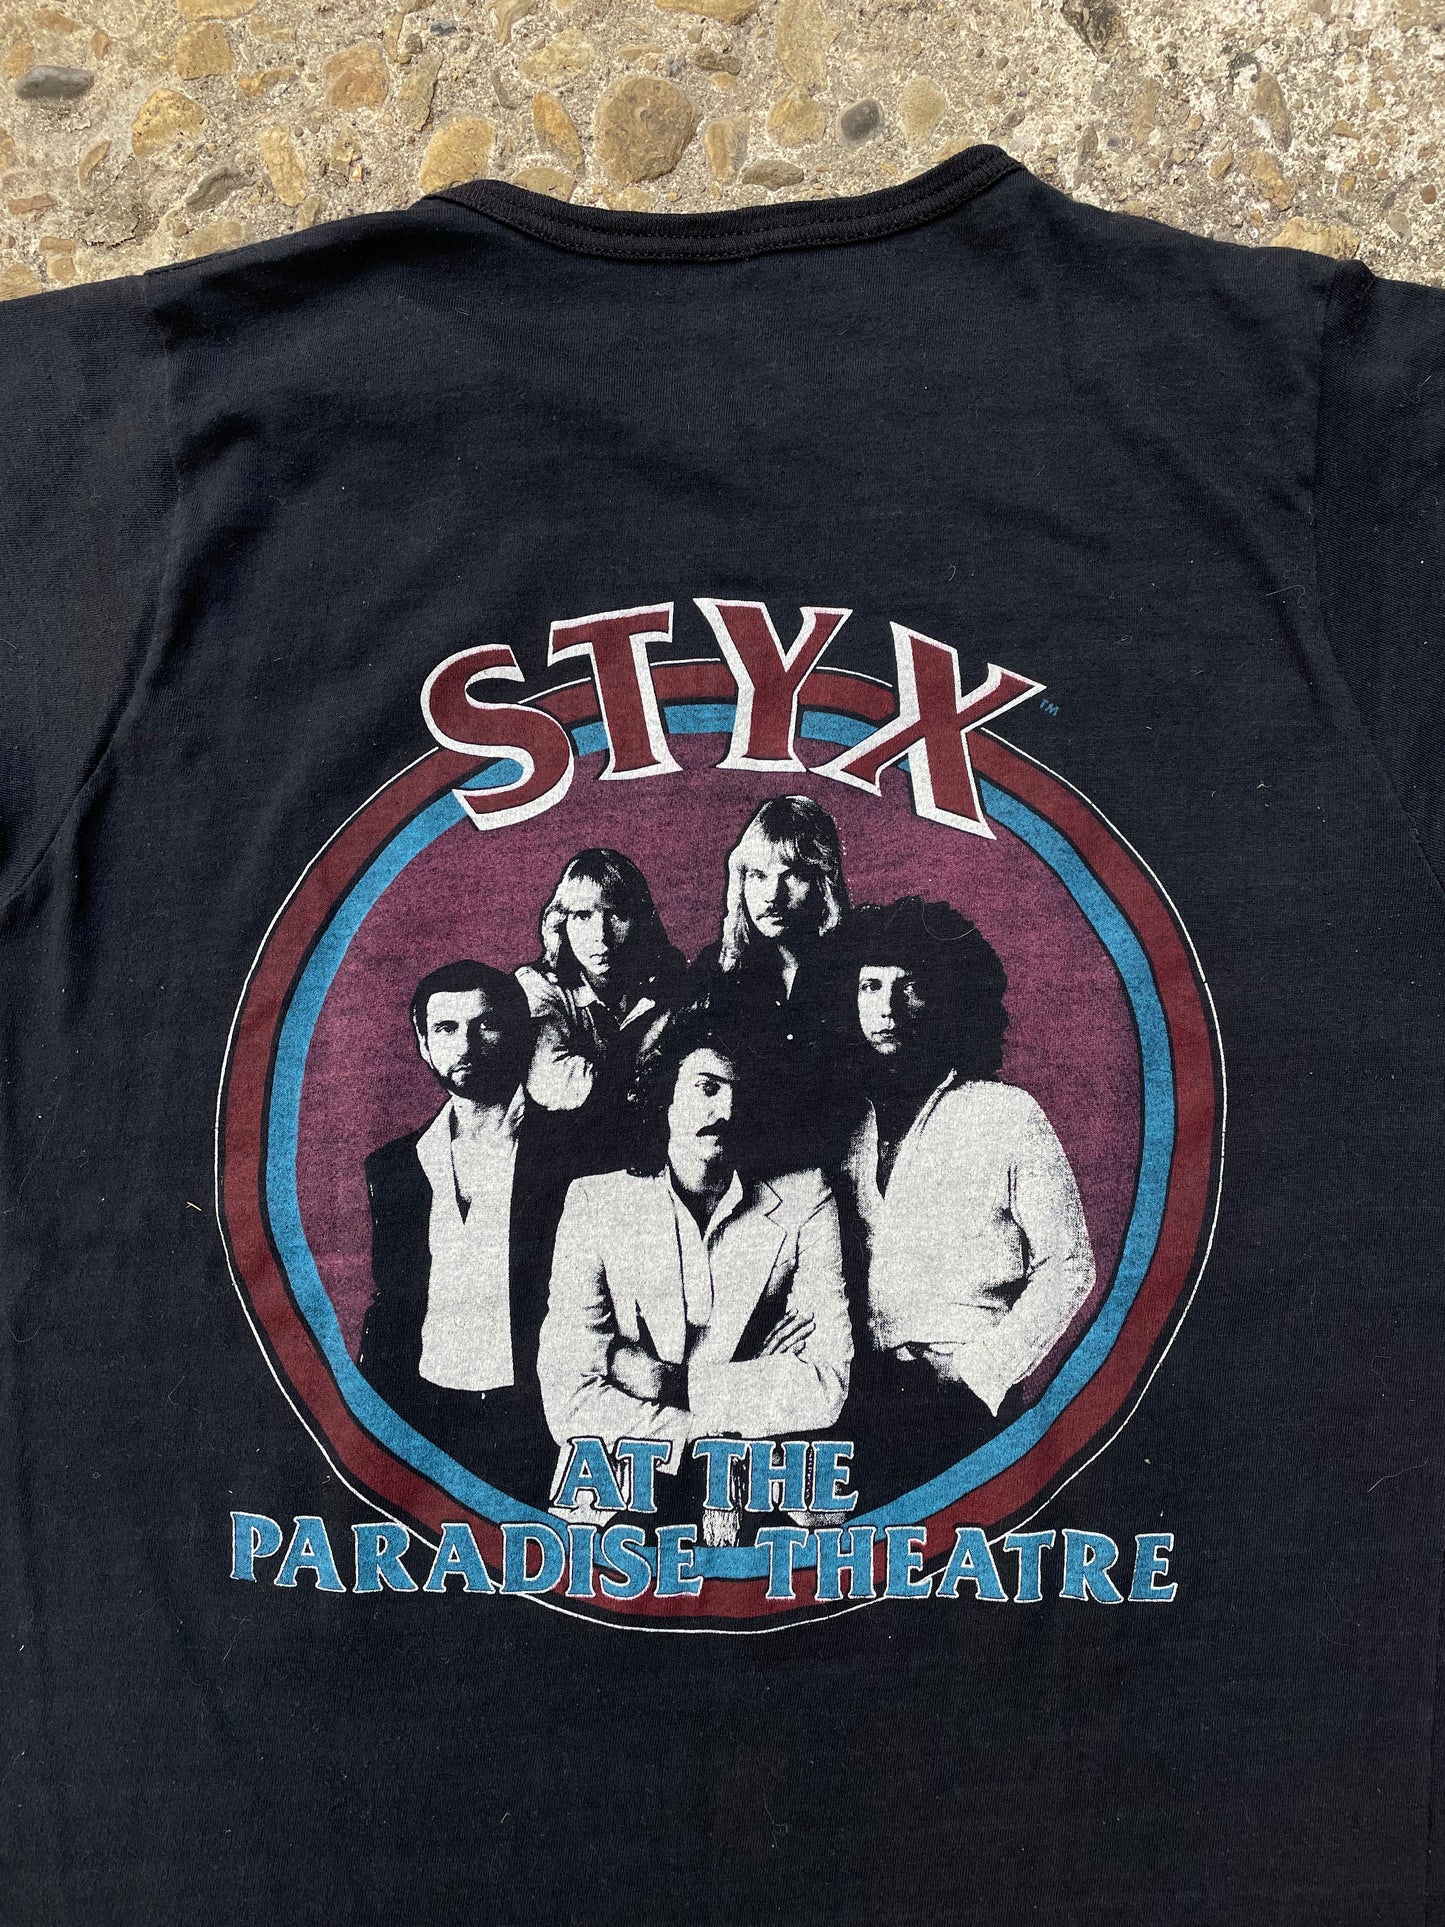 1981 Styx World Tour Band Ringer T-Shirt - S